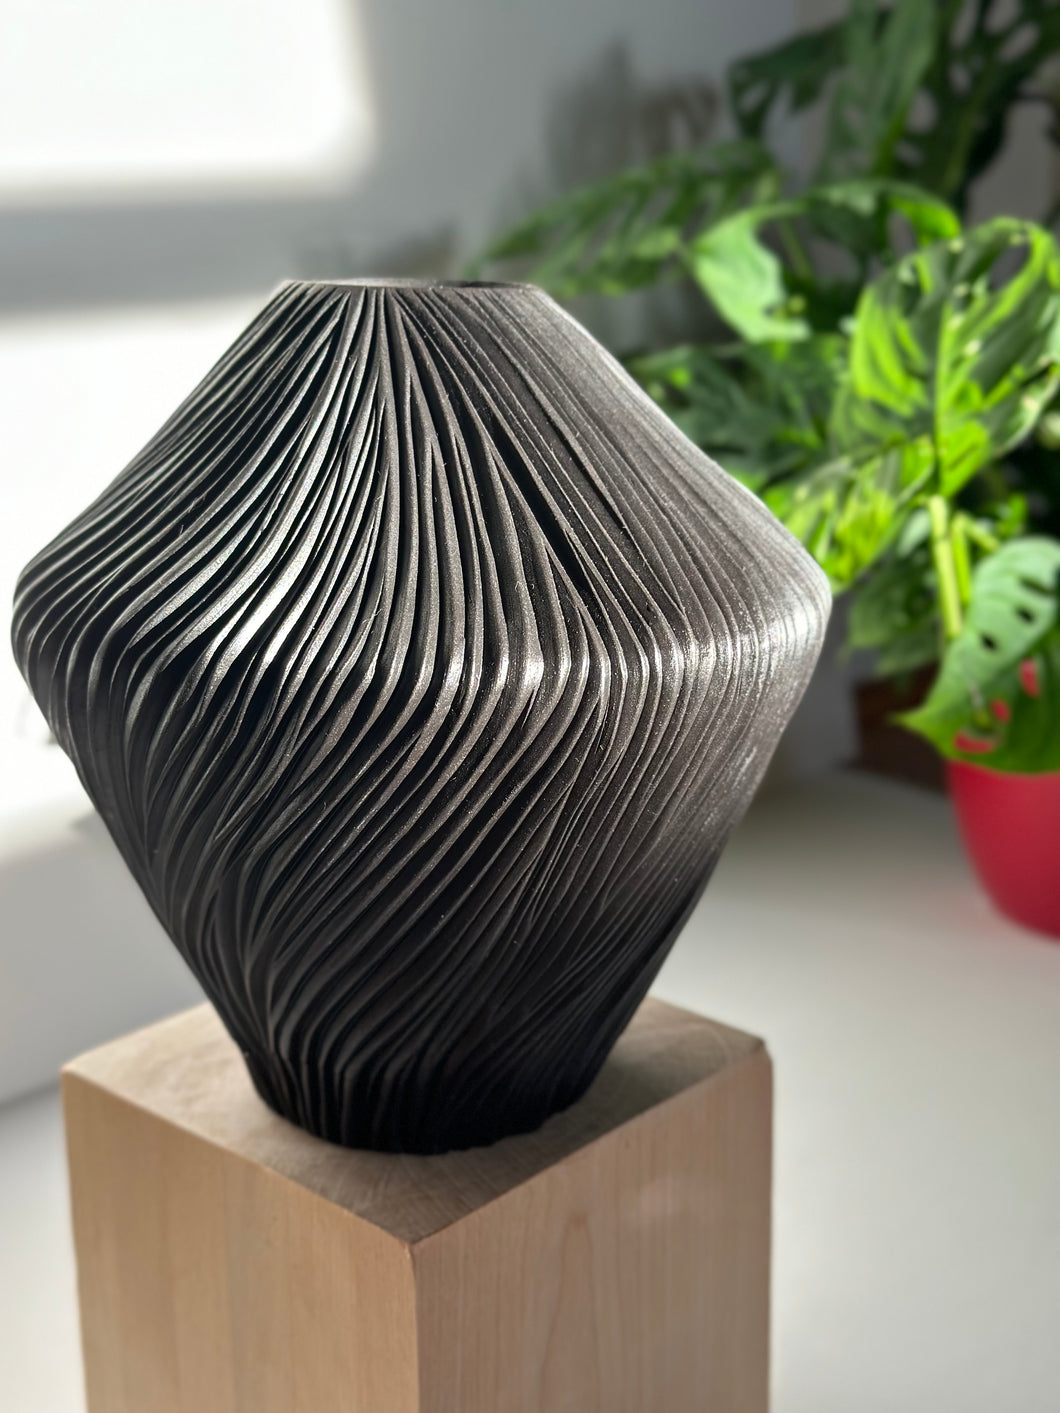 Carved vase (second)